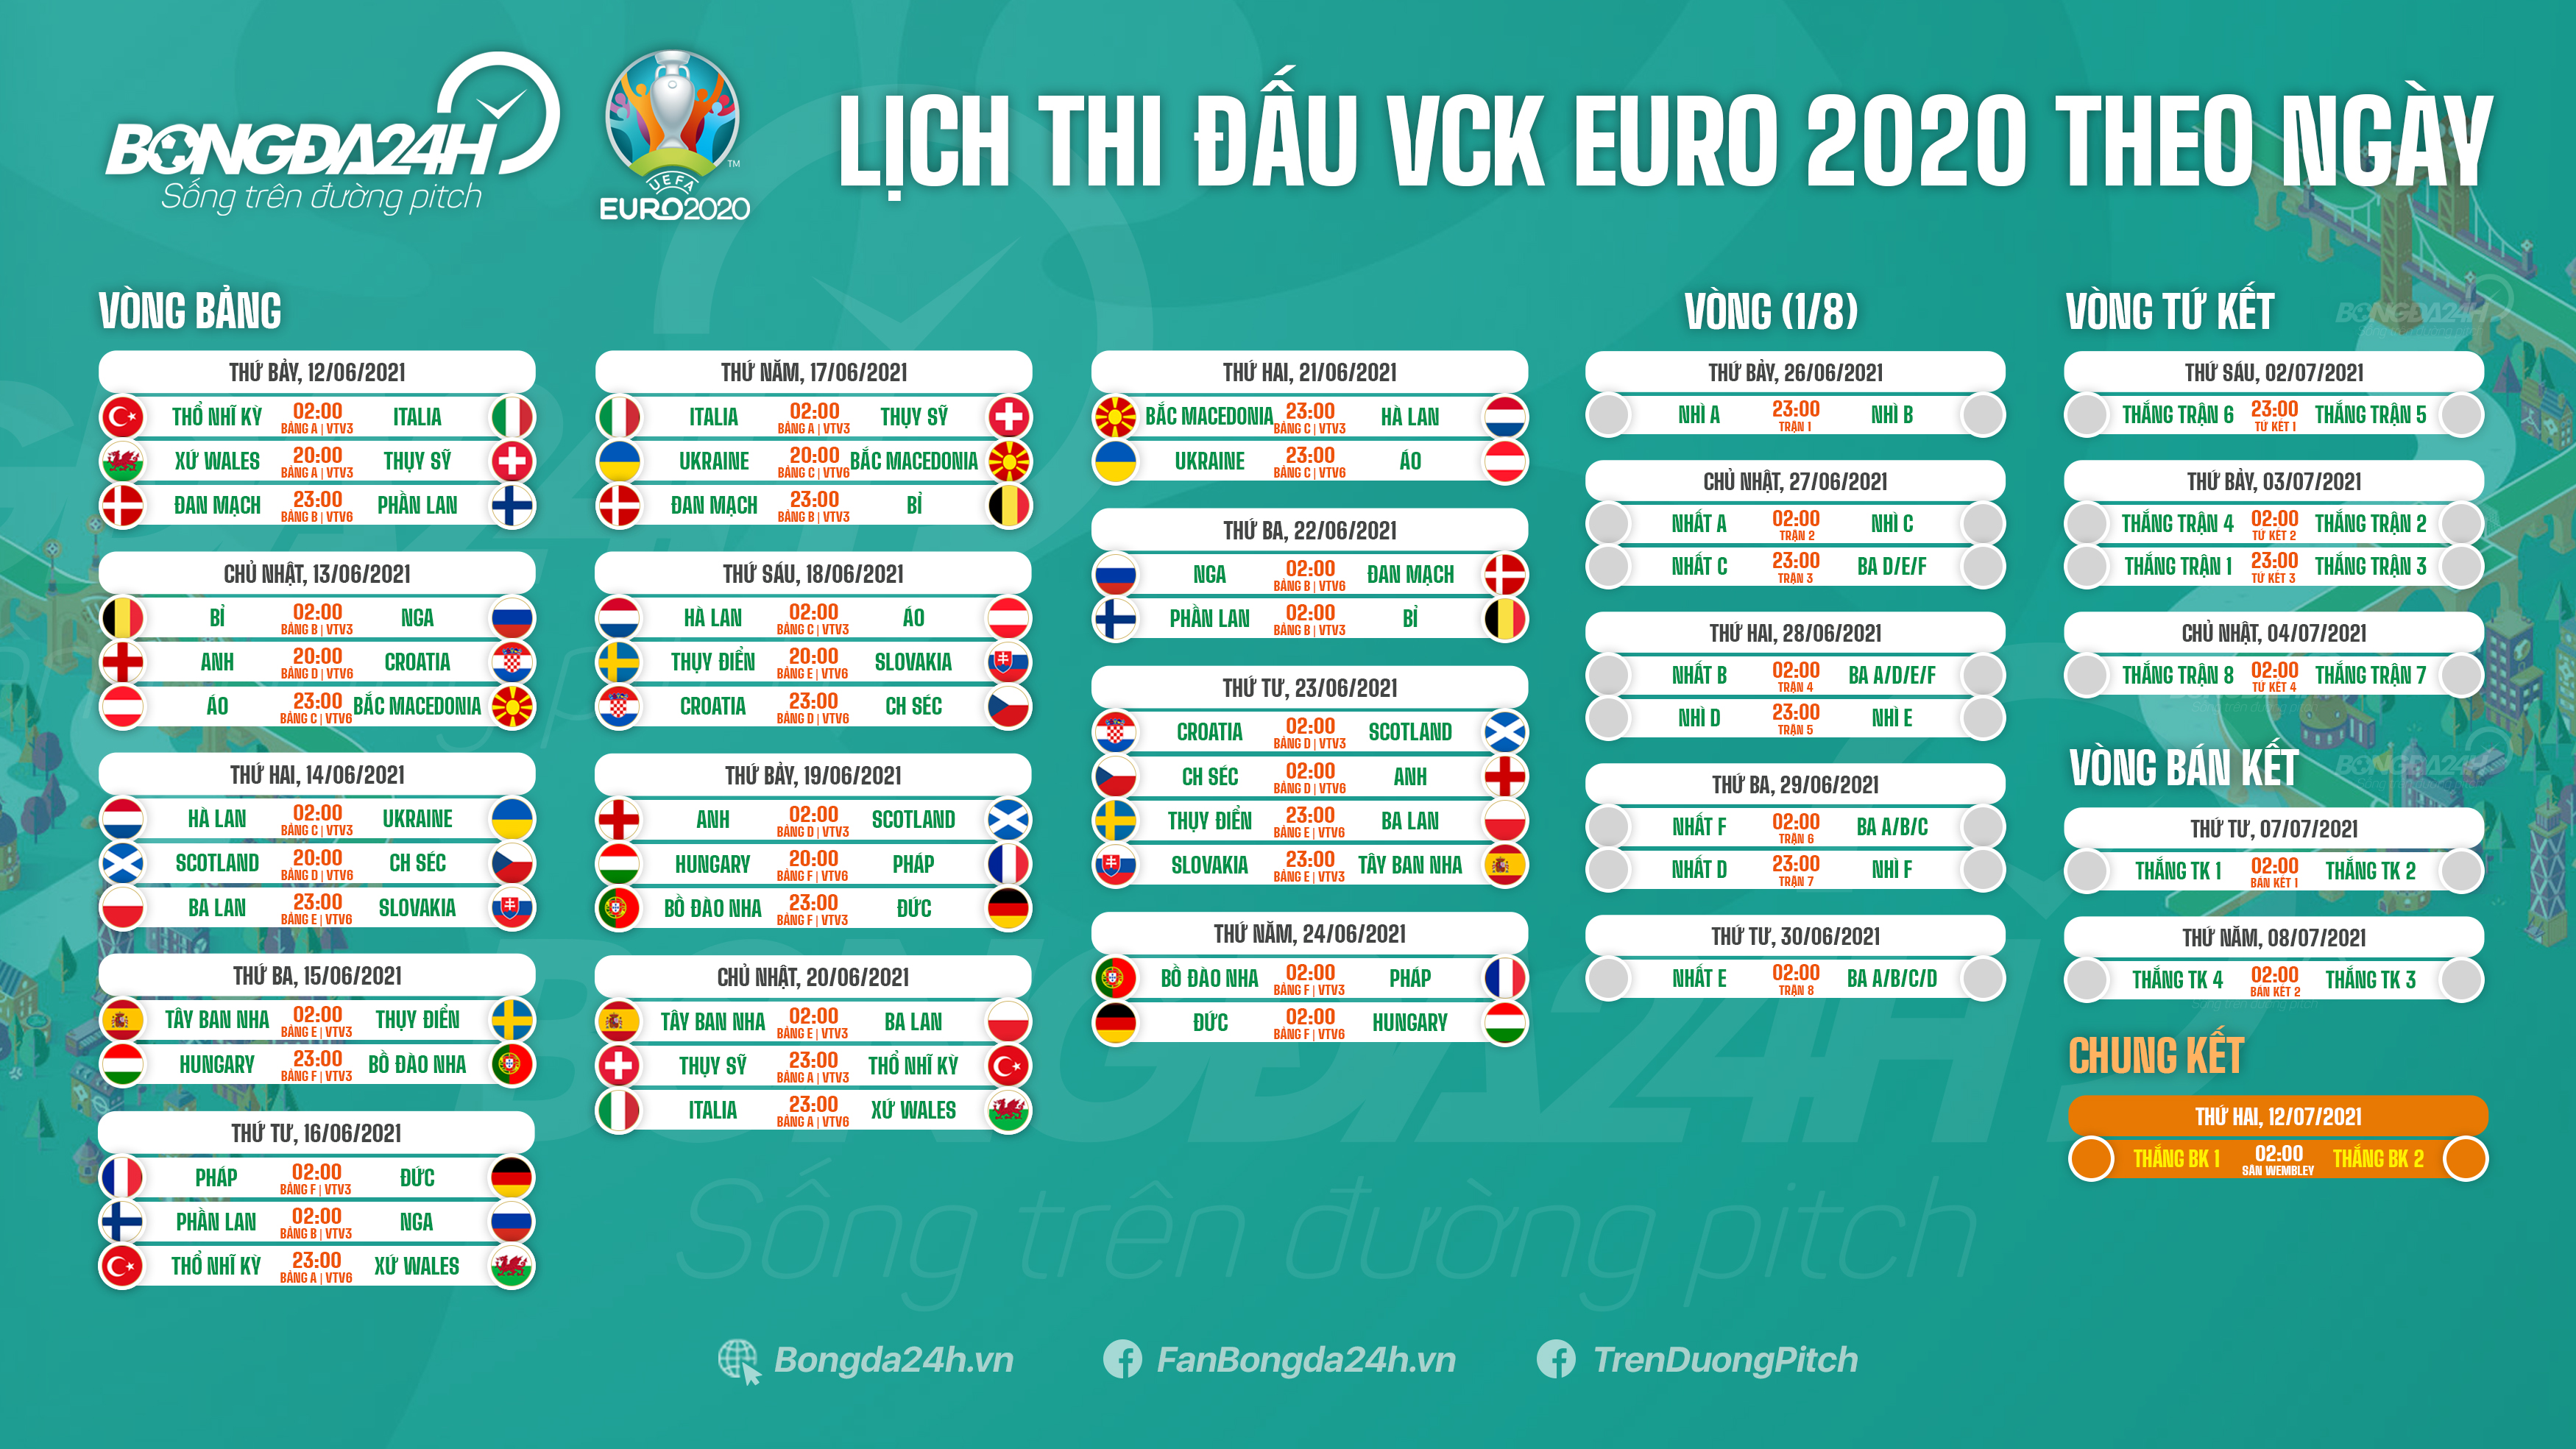 Download bộ ảnh: Lịch thi đấu Euro 2020-Truyền hình trực tiếp Euro VTV6 VTV3 lich vtv3